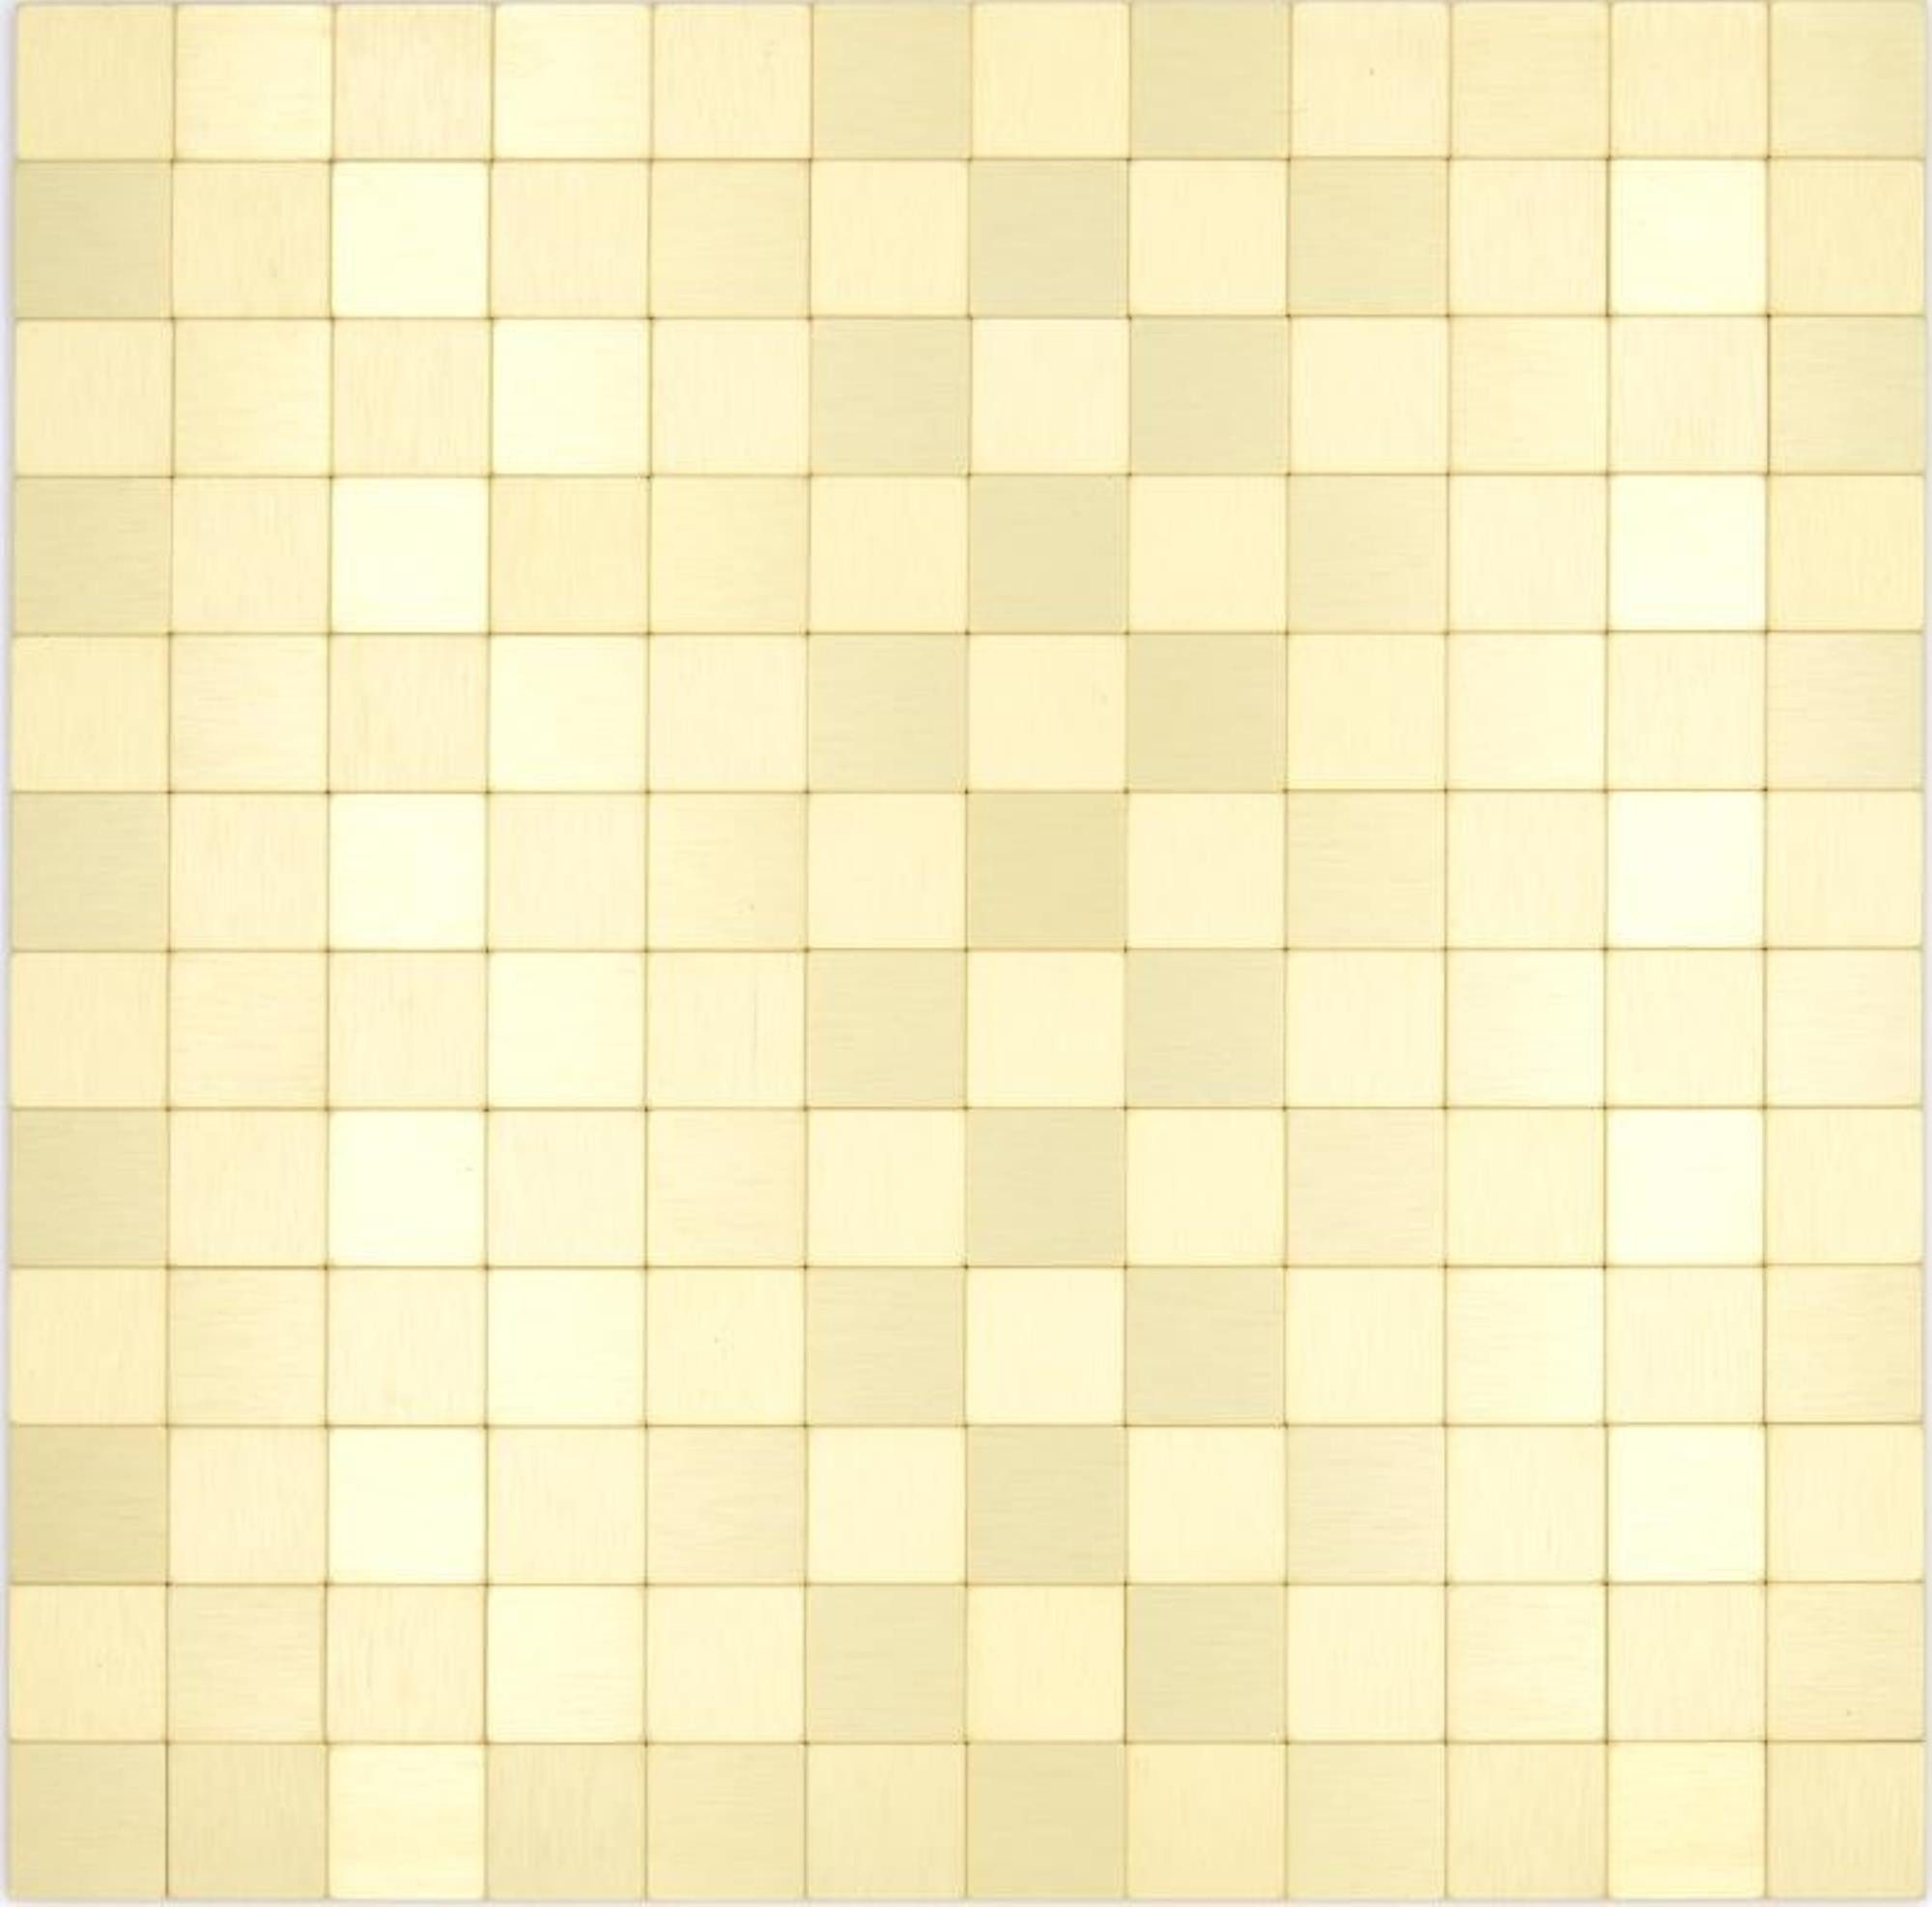 Mosani Aluminium Metall Mosaikfliesen Selbstklebende Wandfliesen Fliesenspiegel Wanddeko, 30.5x30.5, Gold, Spritzwasserbereich geeignet, Küchenrückwand Spritzschutz